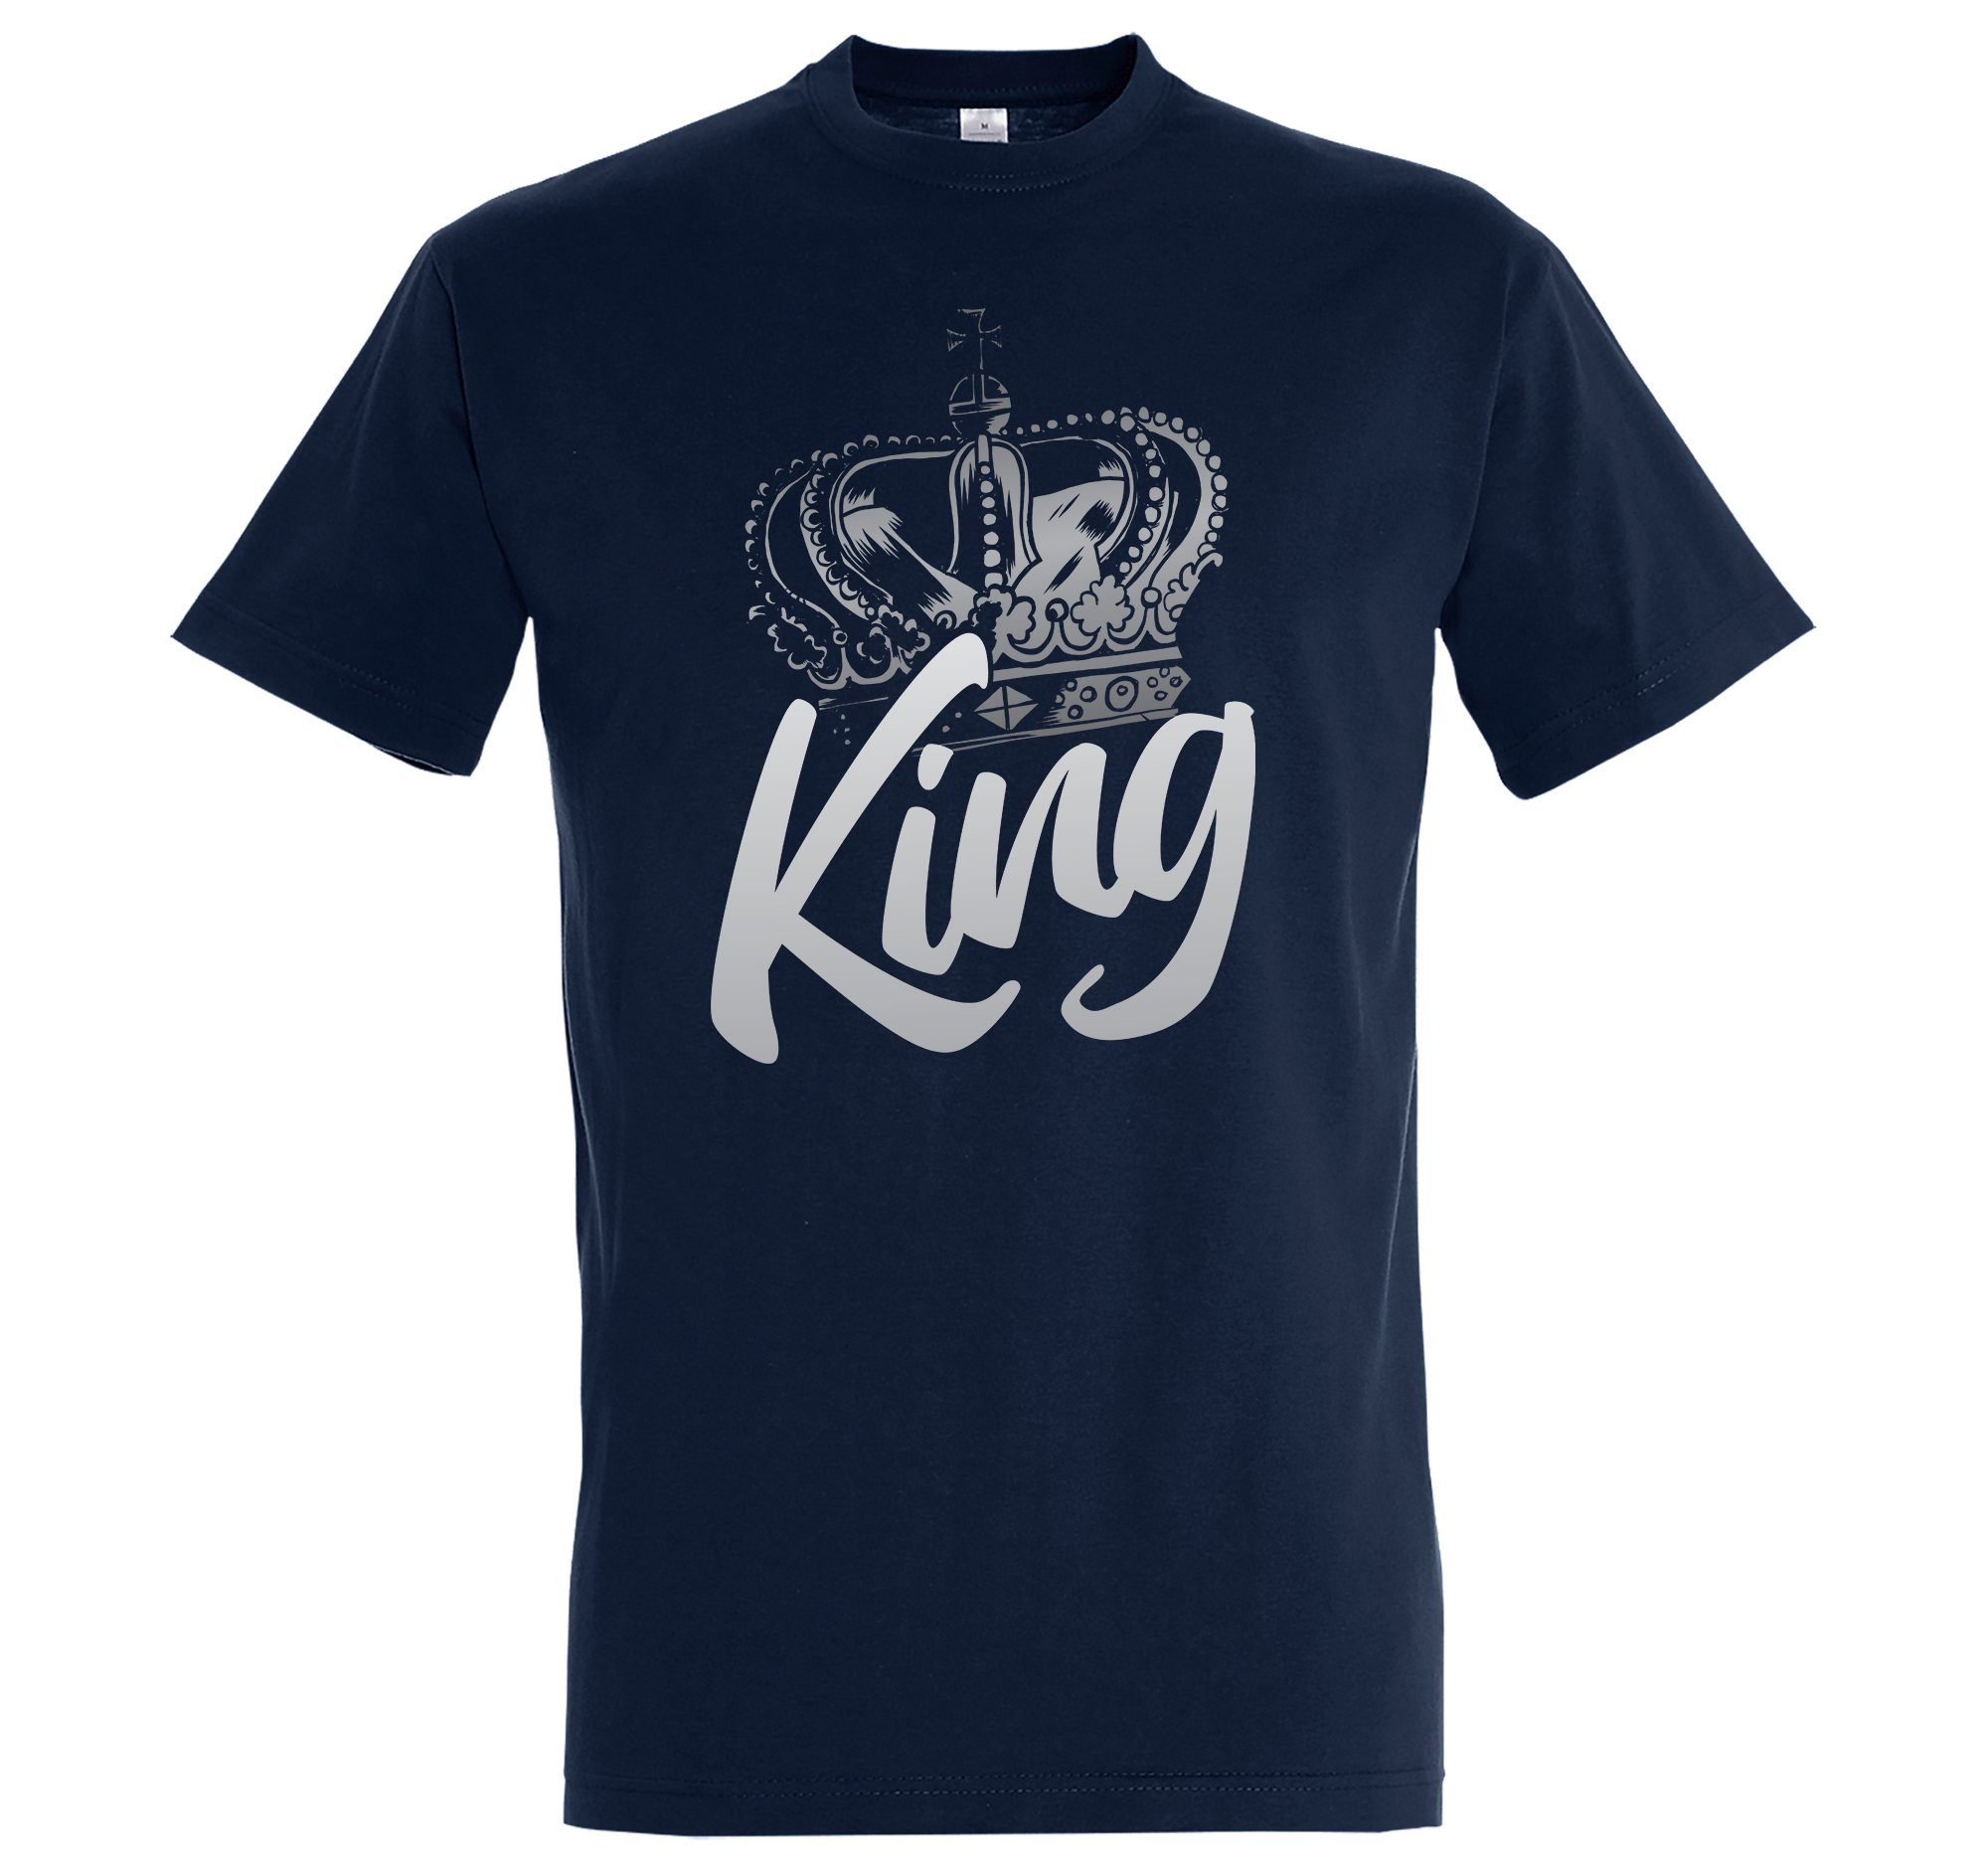 Youth Designz T-Shirt King König Krone Herren Shirt mit trendigem Frontprint